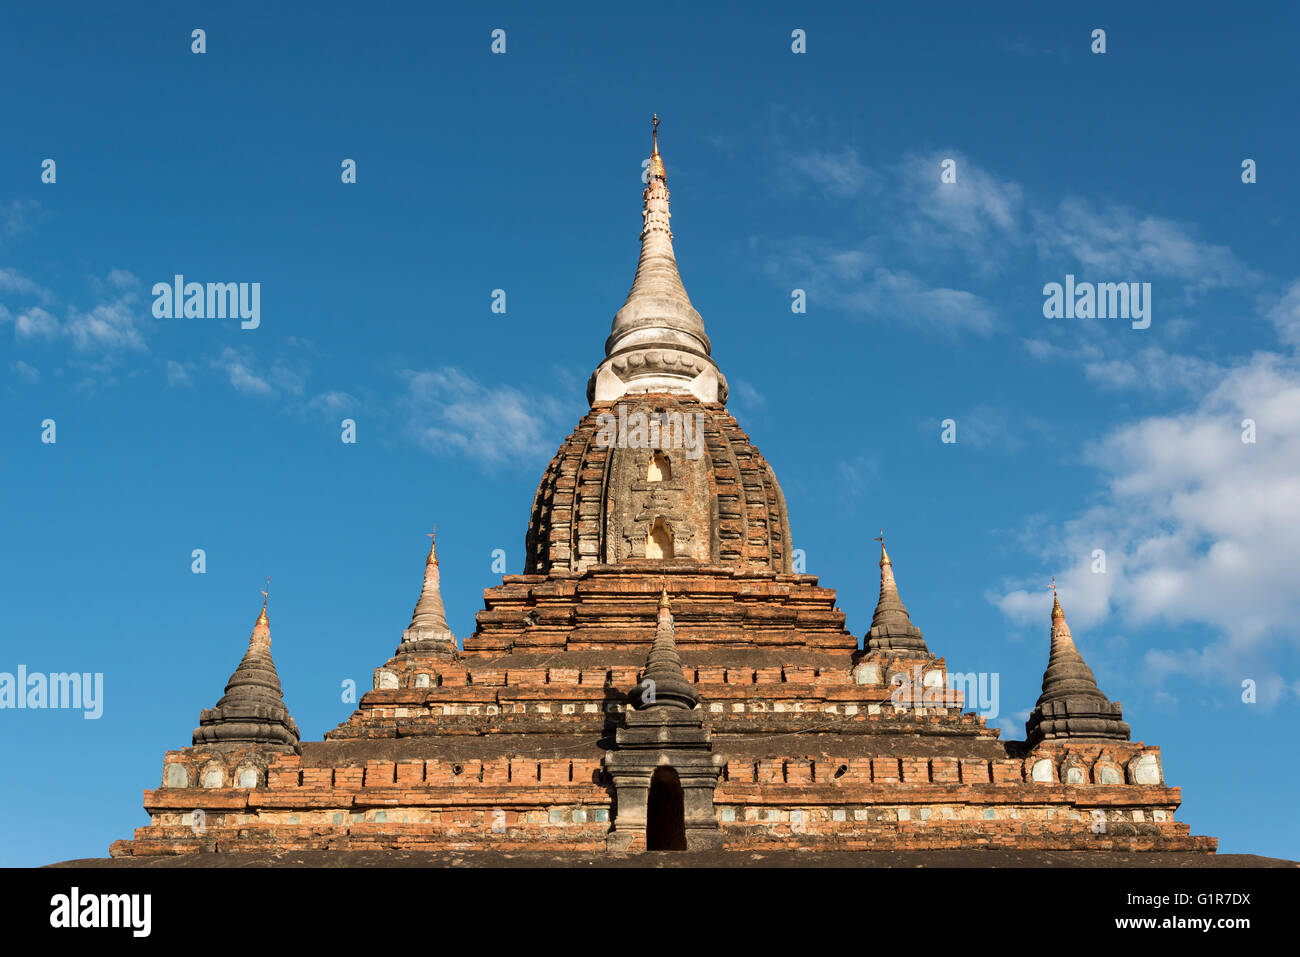 Nagayon Paya temple in Bagan, Burma - Myanmar Stock Photo